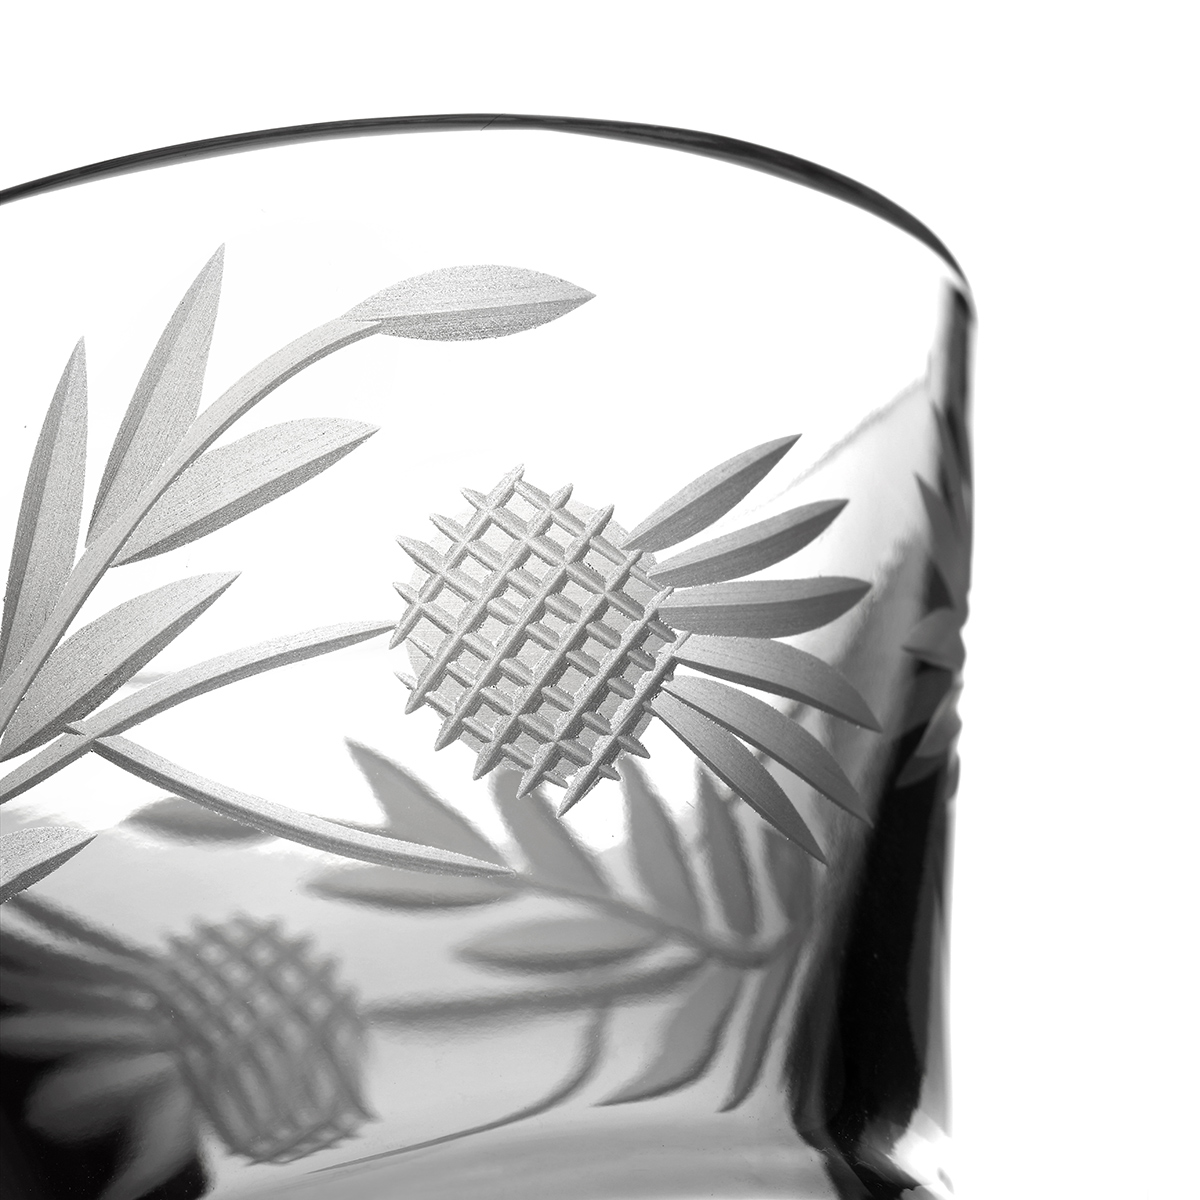 Flower of Scotland - Whiskyglas aus Schottland in Form einer Distel